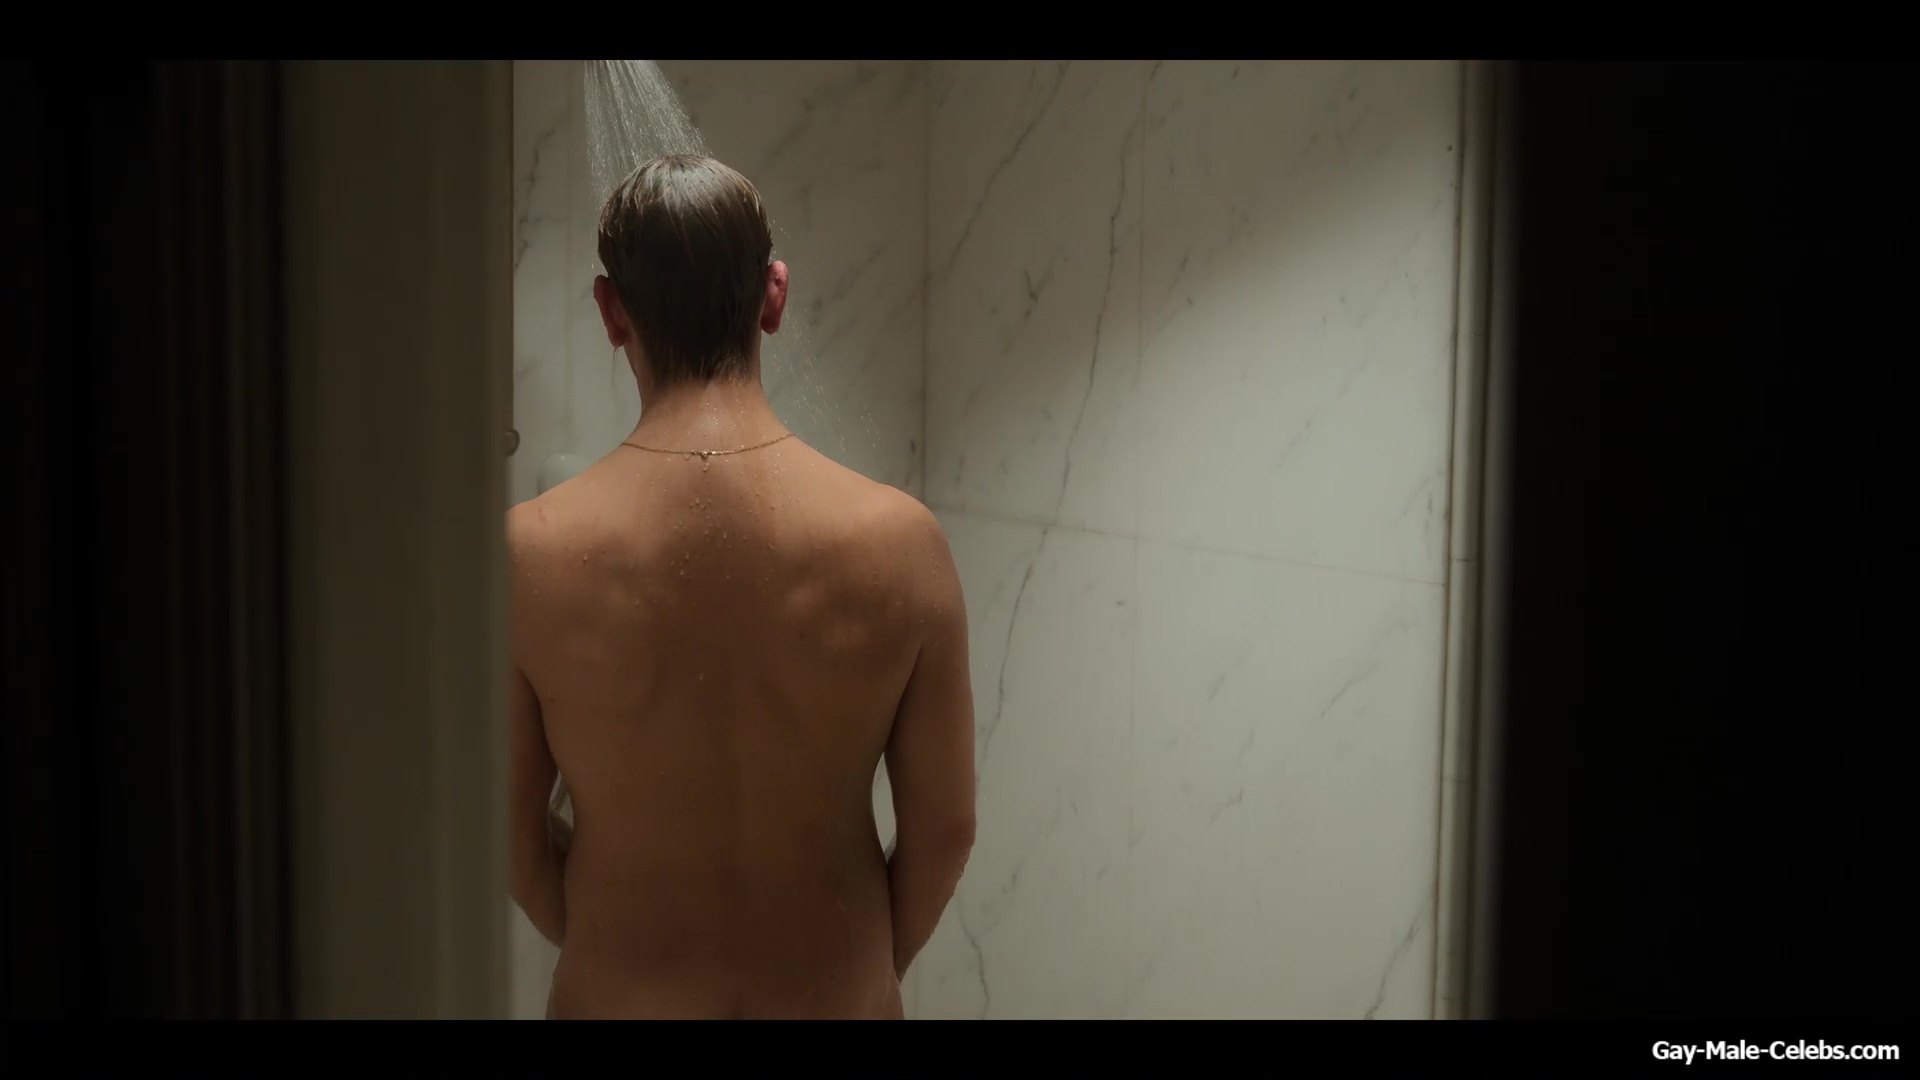 Alessandro Borghi shower scenes